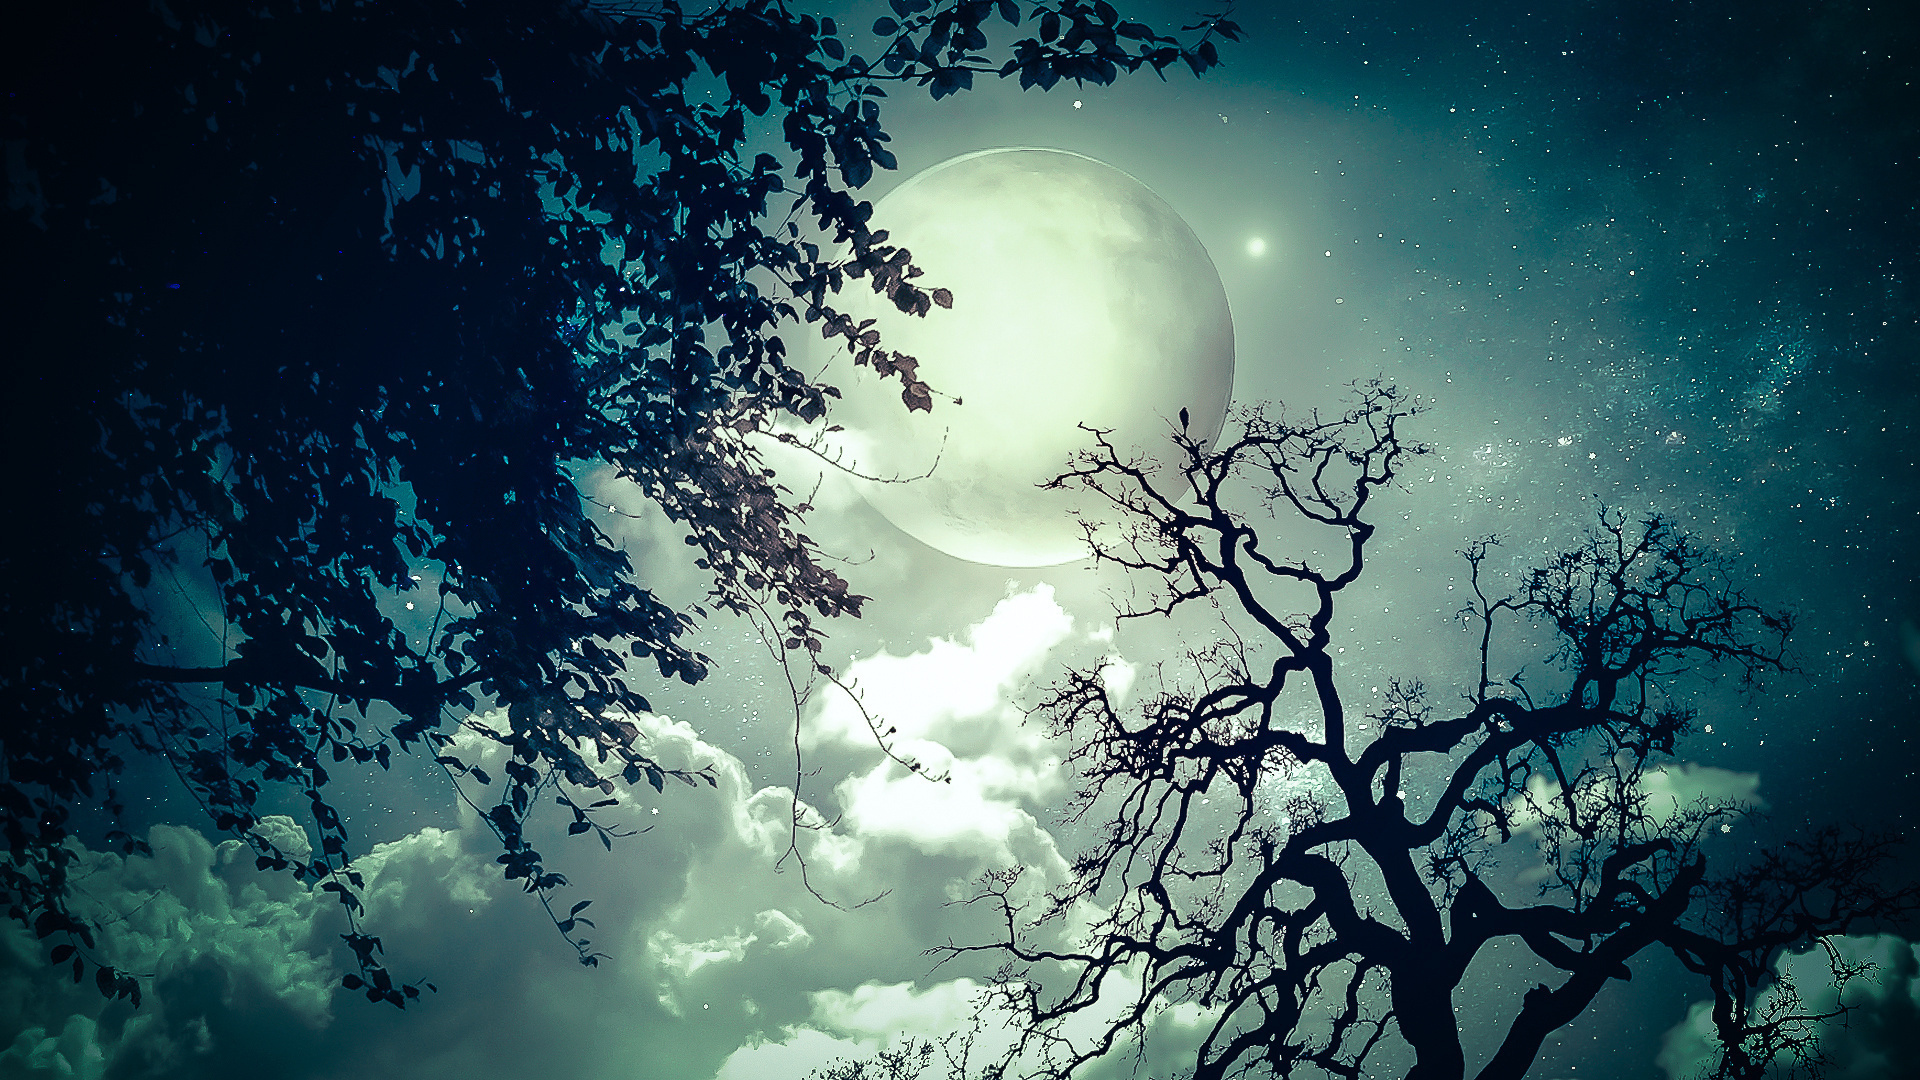 Moon trees clouds dream stars wallpaper 1920x1080 32192